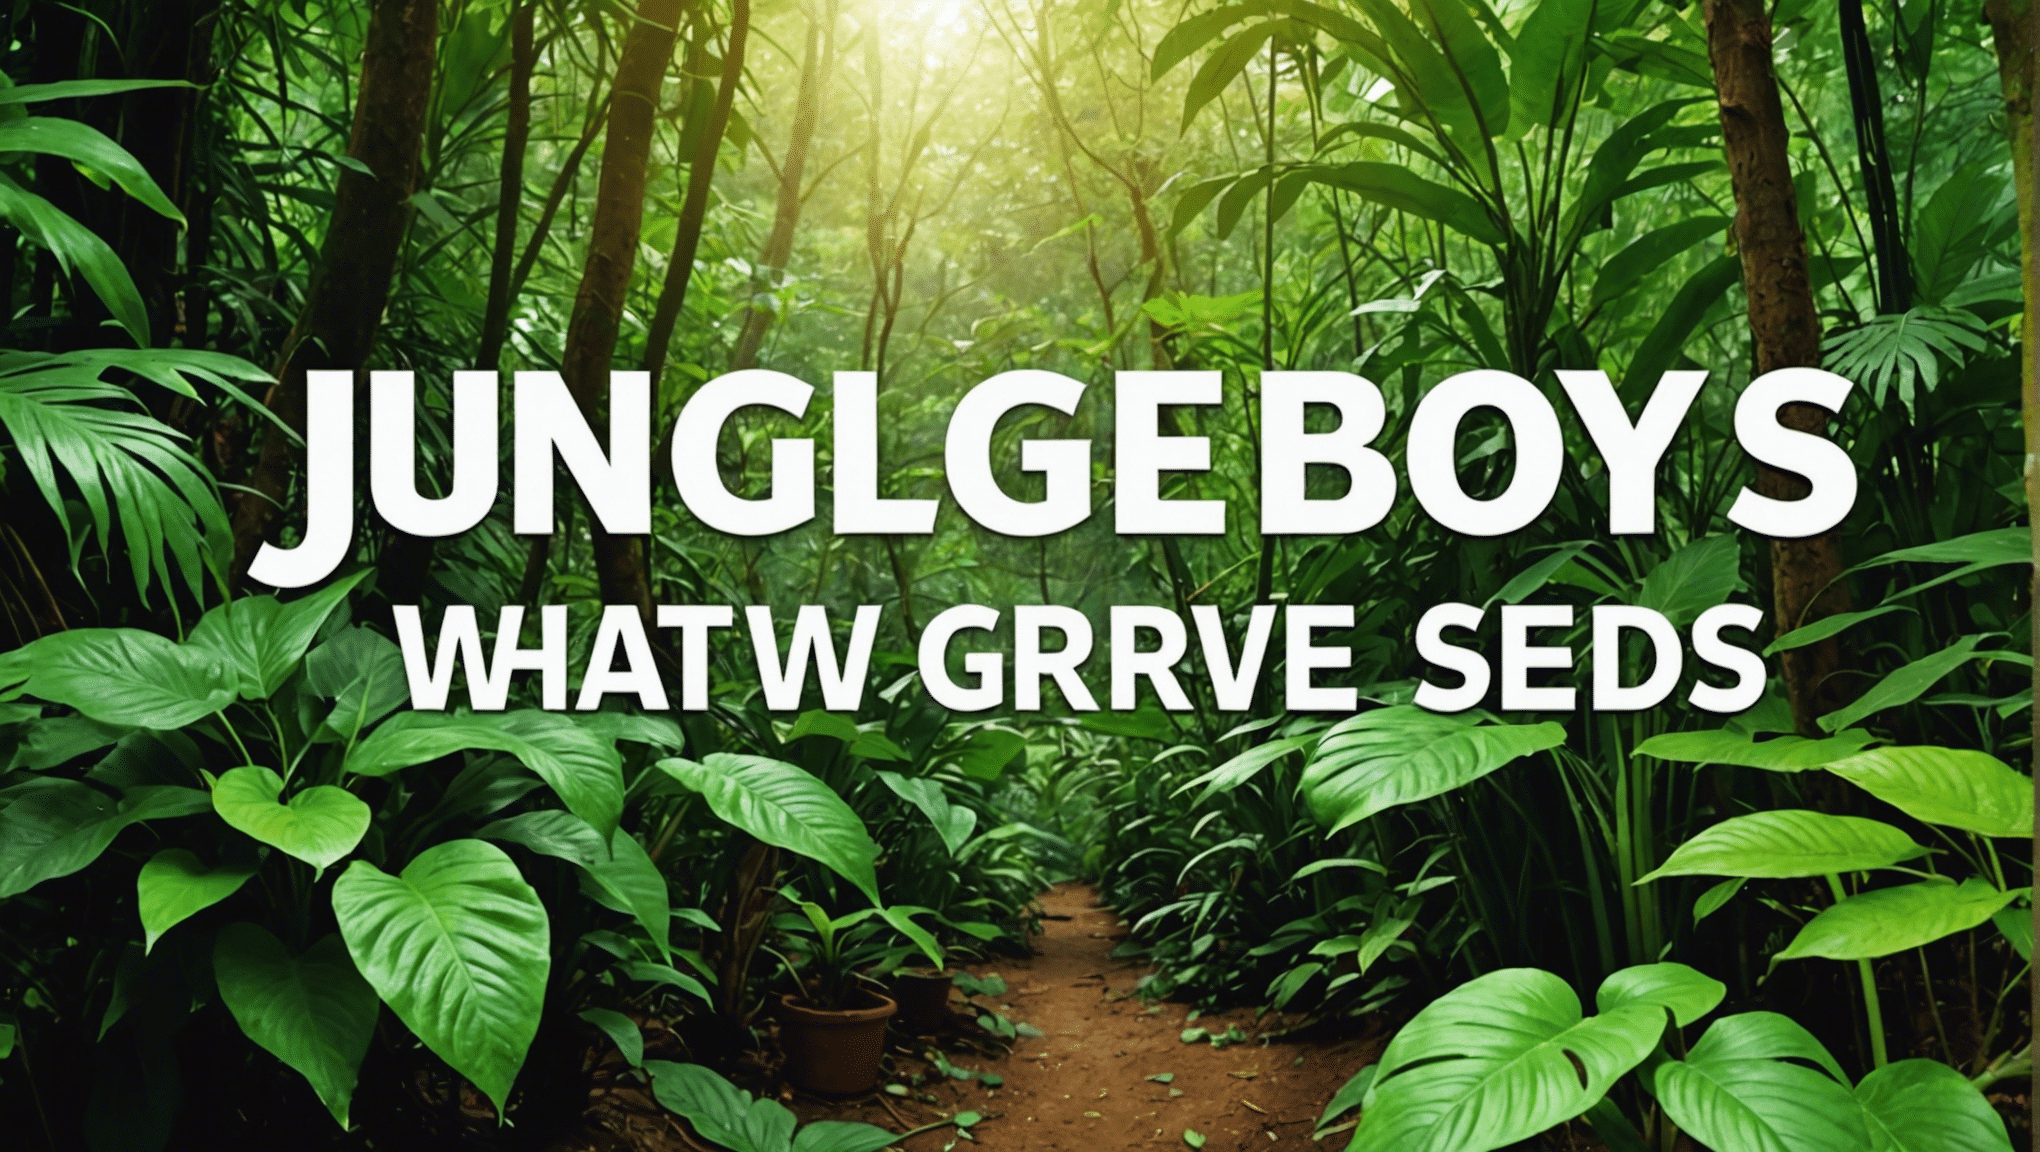 scopri il significato dei semi dei Jungle Boys e il loro processo di crescita in questa guida completa. scopri le caratteristiche uniche e le tecniche di coltivazione dei semi dei Jungle Boys.